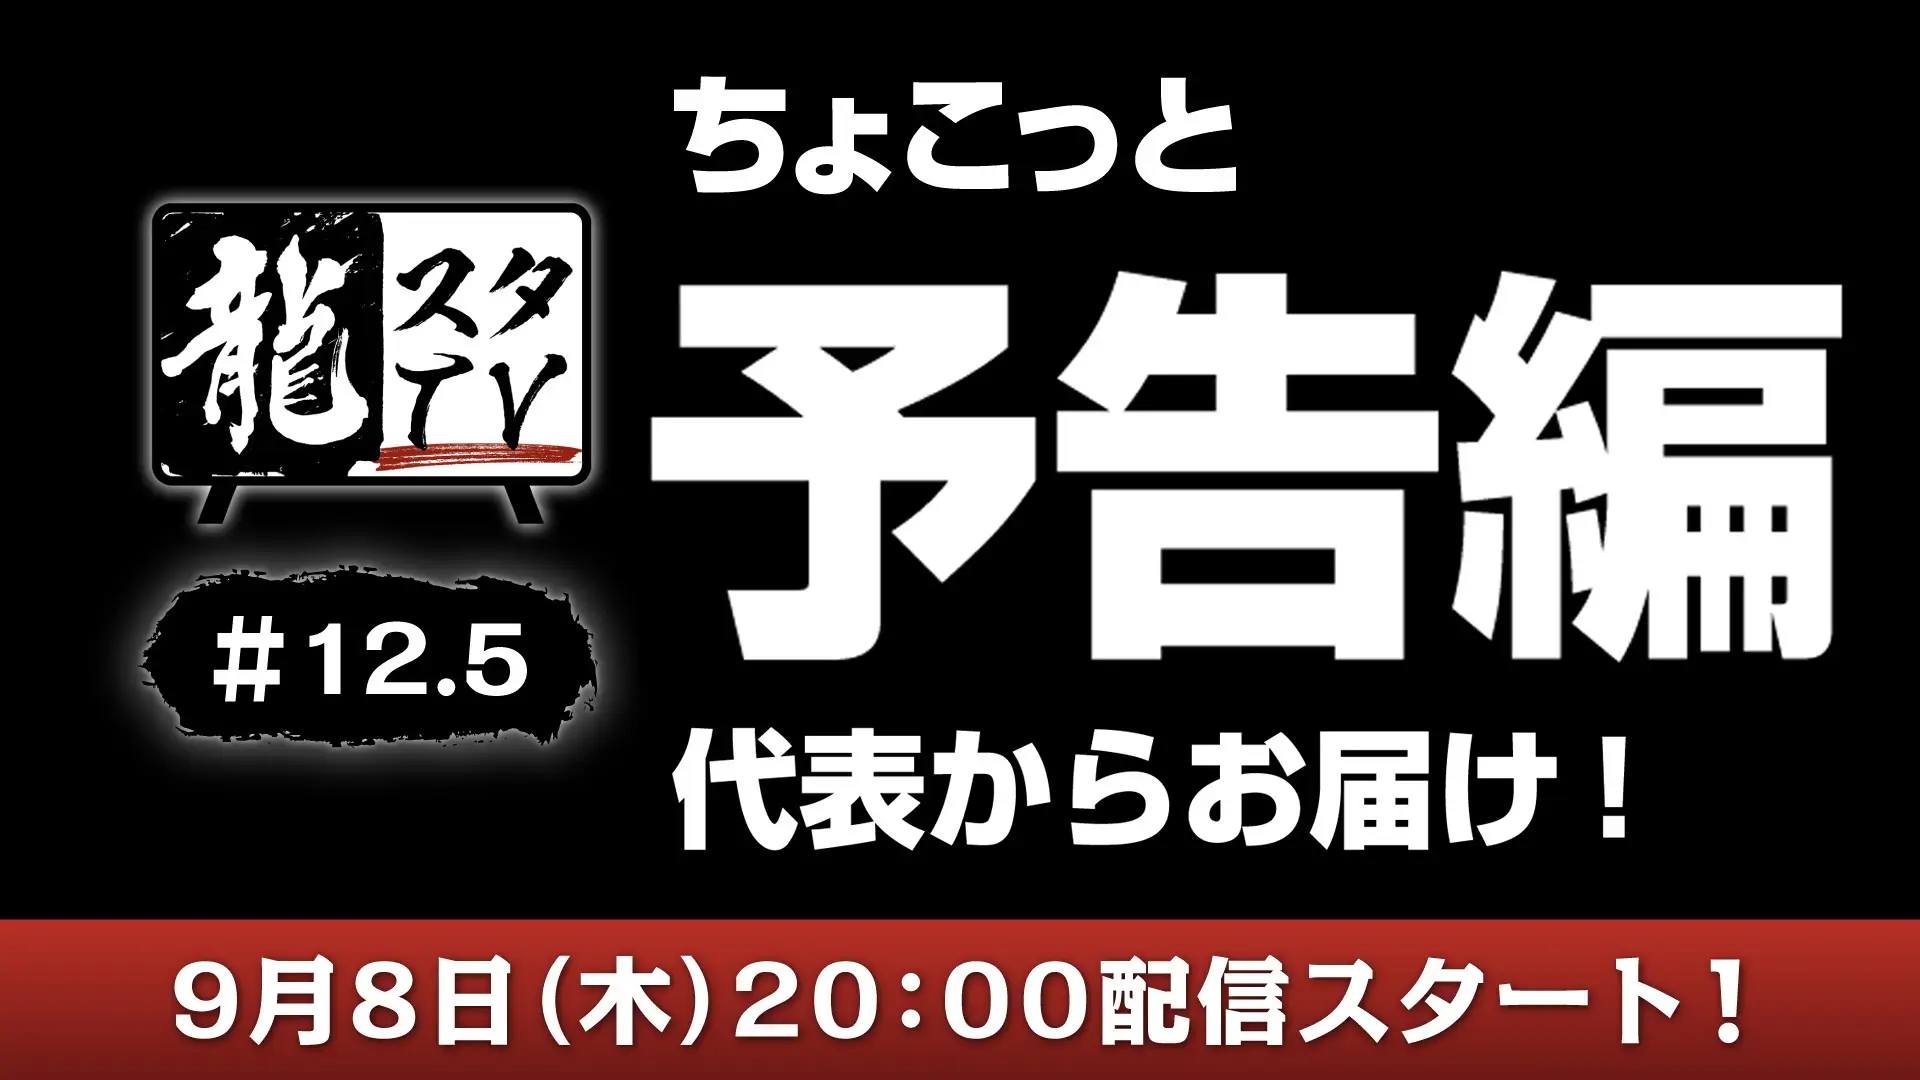 Banner em japonês convida fãs a participarem de transmissão ao vivo da SEGA: especulações afirmam que a ocasião marca o anúncio oficial de Yakuza 8